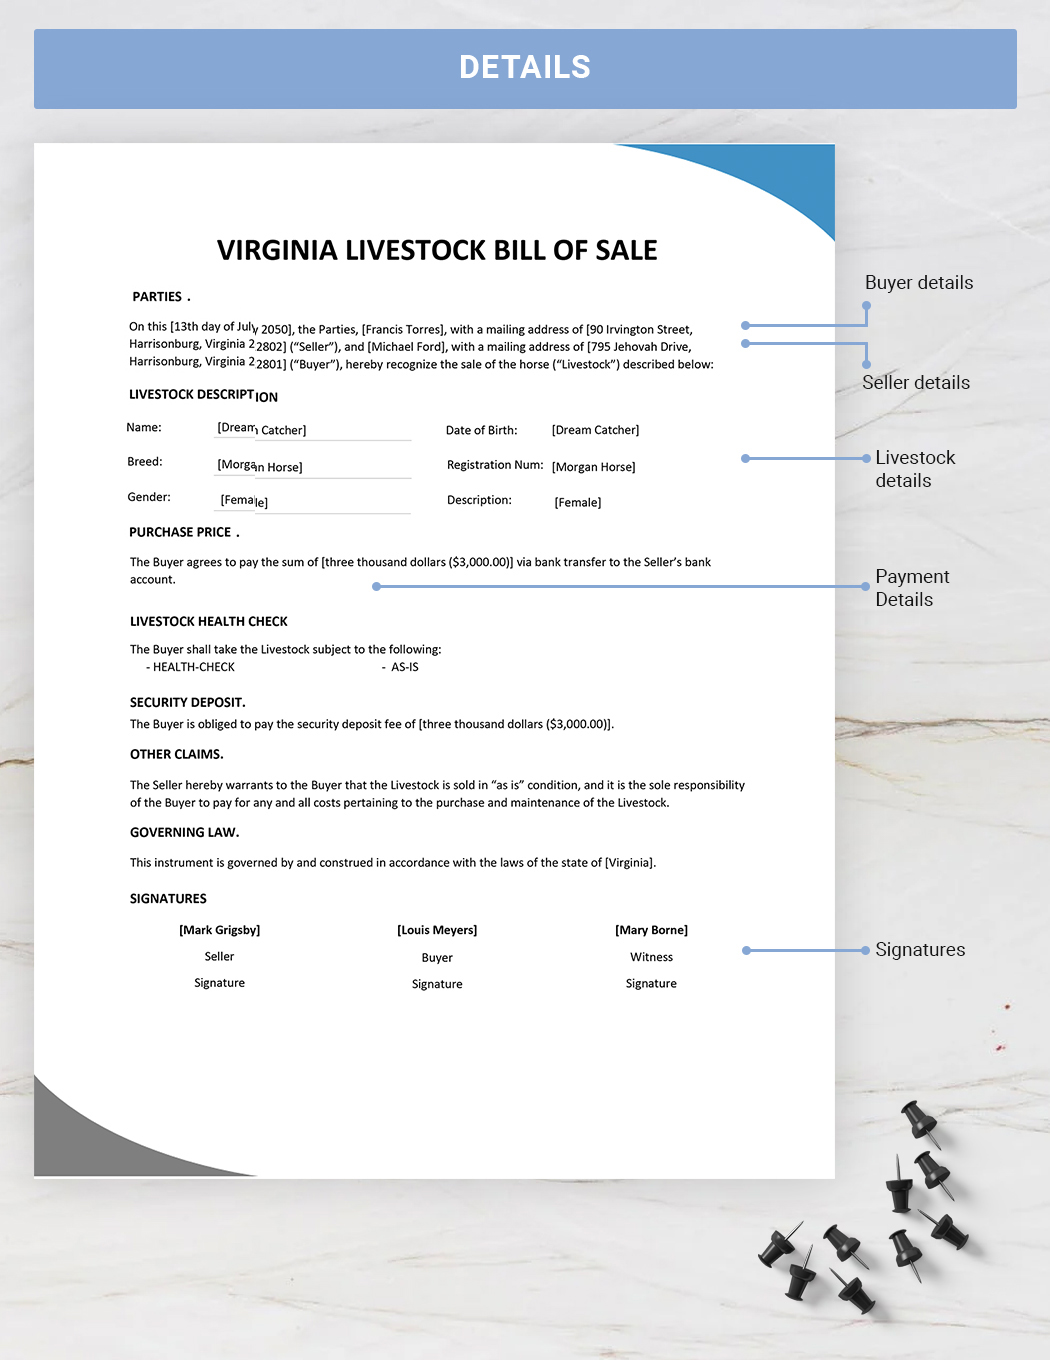 Virginia Livestock Bill of Sale Template